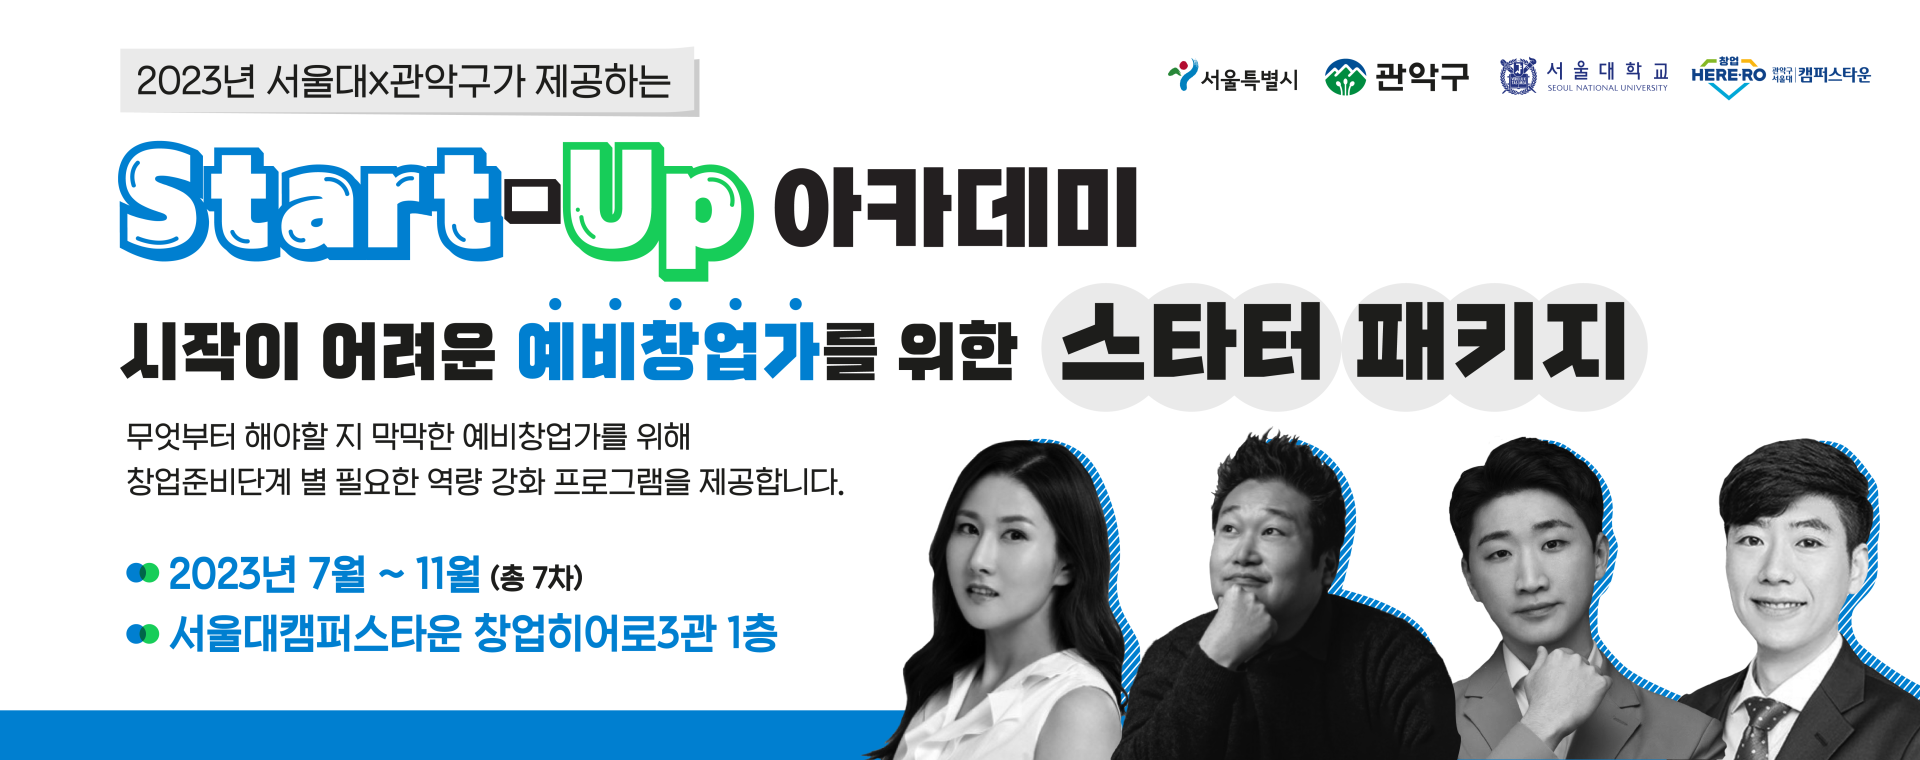 서울대x관악구 캠퍼스타운 「2023년 Start-Up 아카데미」